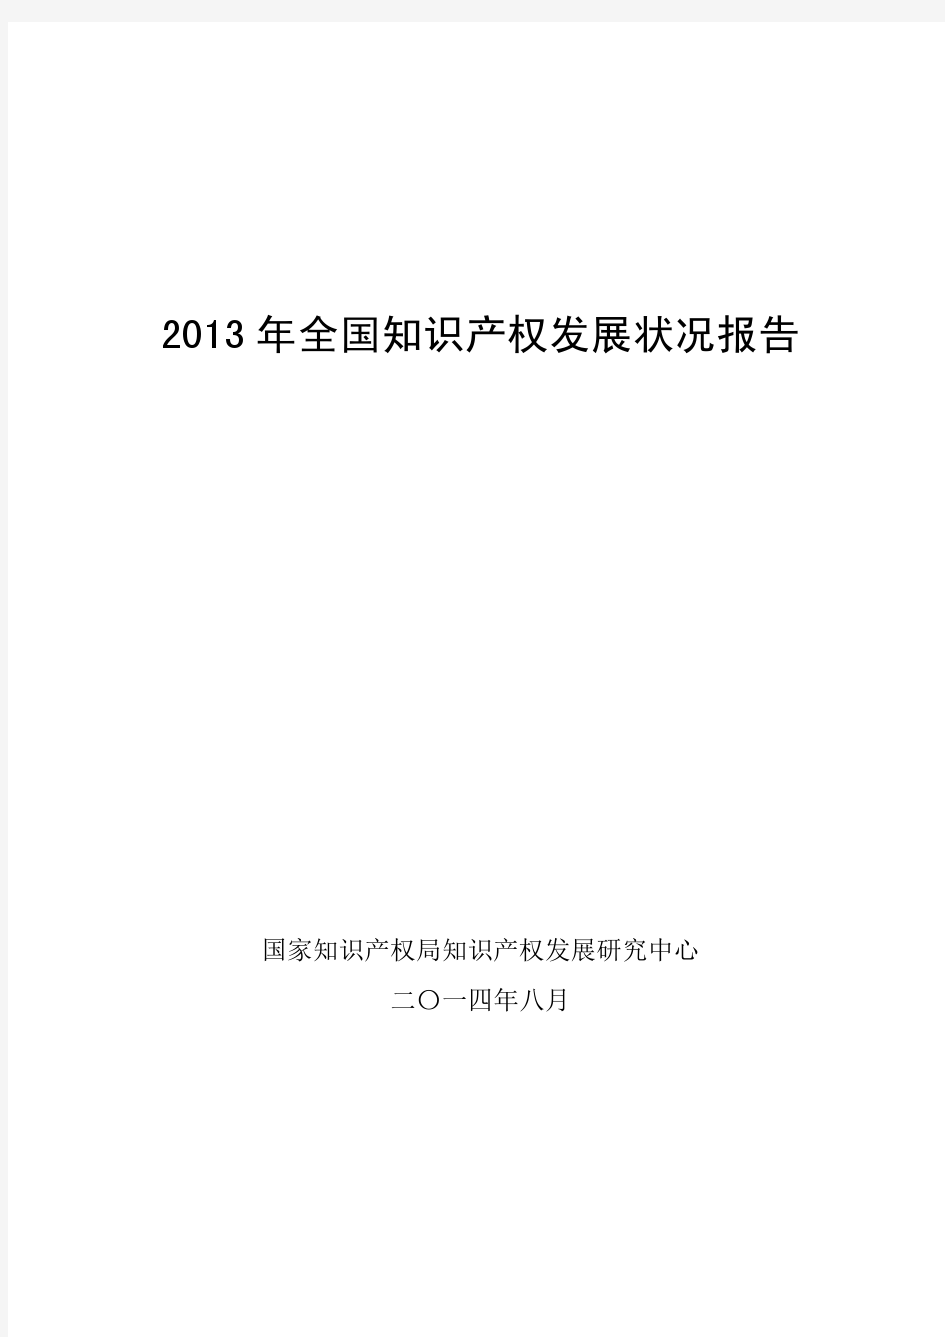 2013年全国知识产权发展状况报告